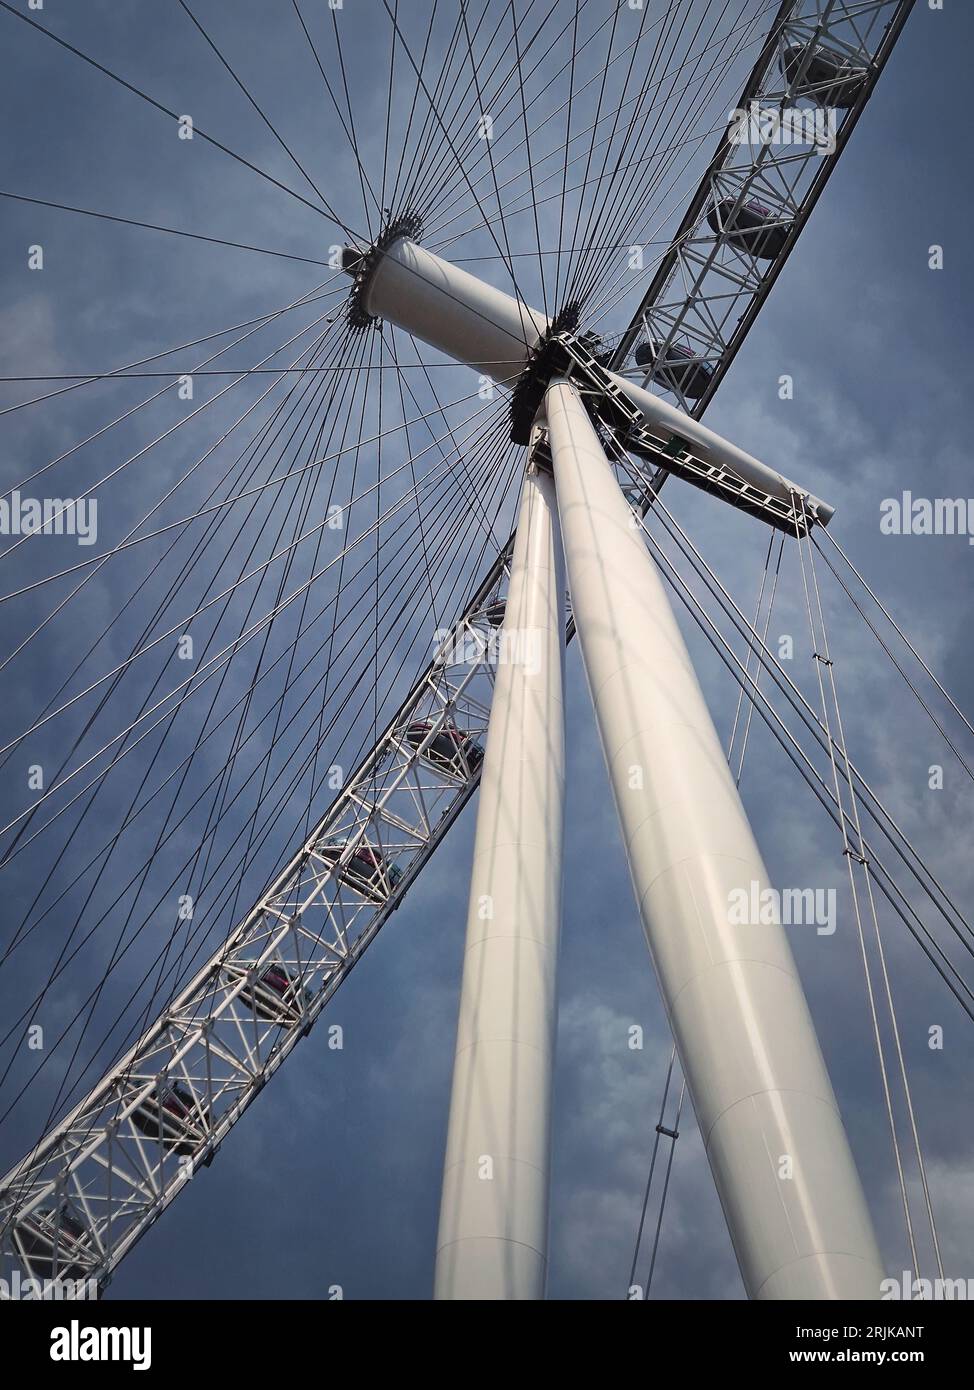 Résumé London Eye Ferris Wheel gros plan des détails architecturaux et des éléments de construction Banque D'Images